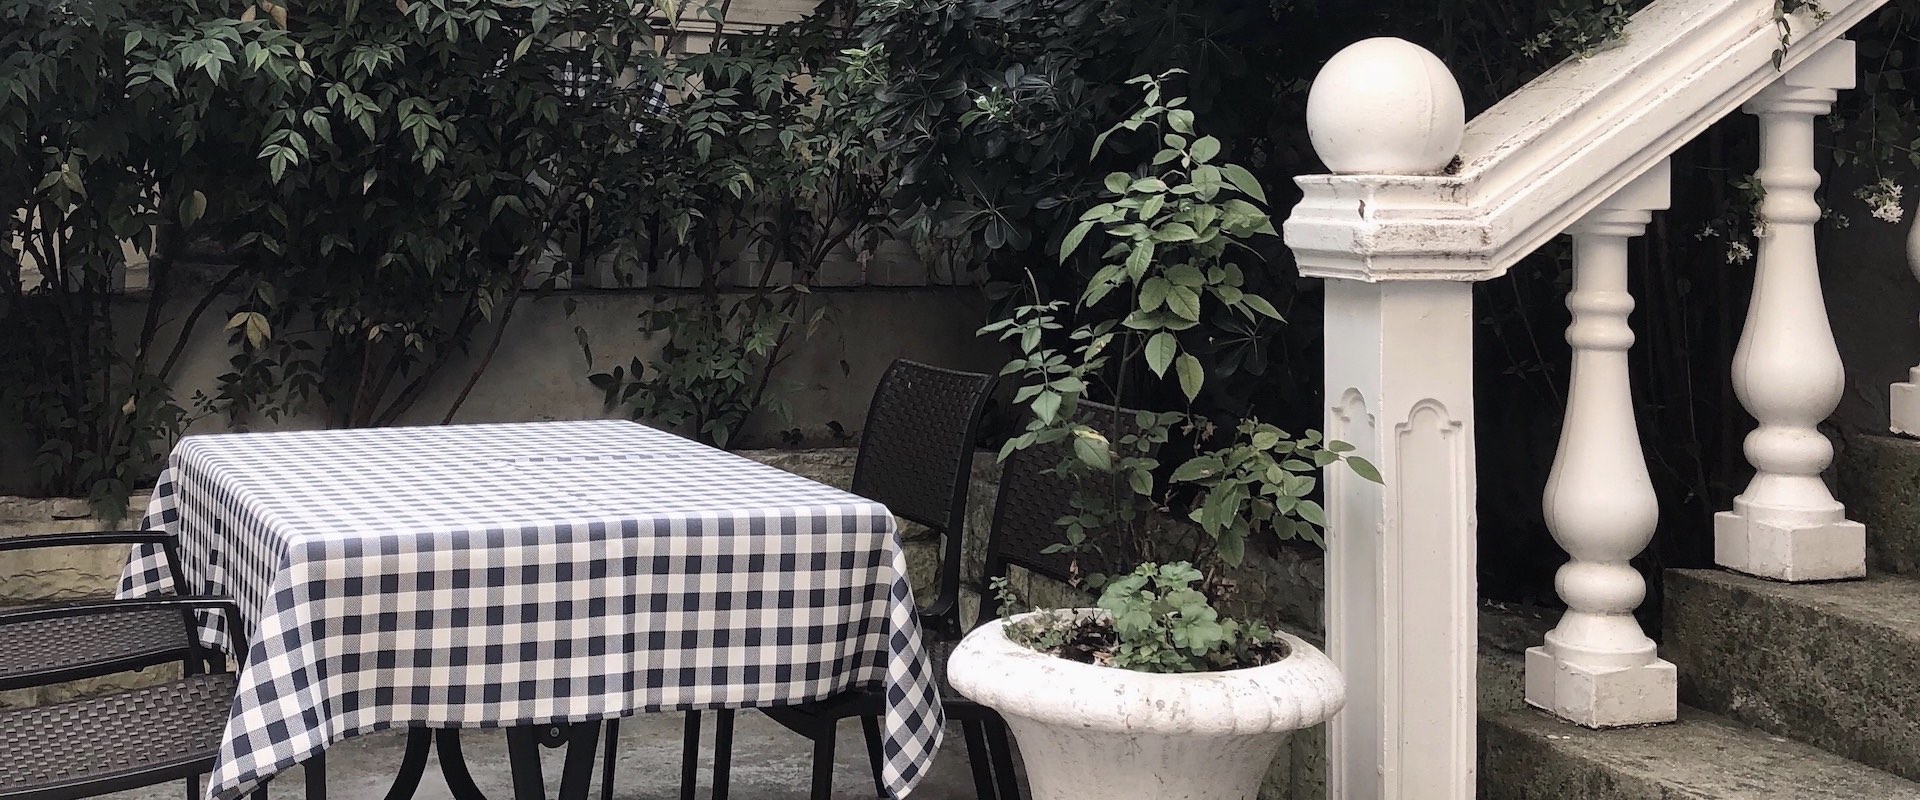 Table avec nappe à carreaux dans une cour intérieure avec un escalier en pierre et des plantes.